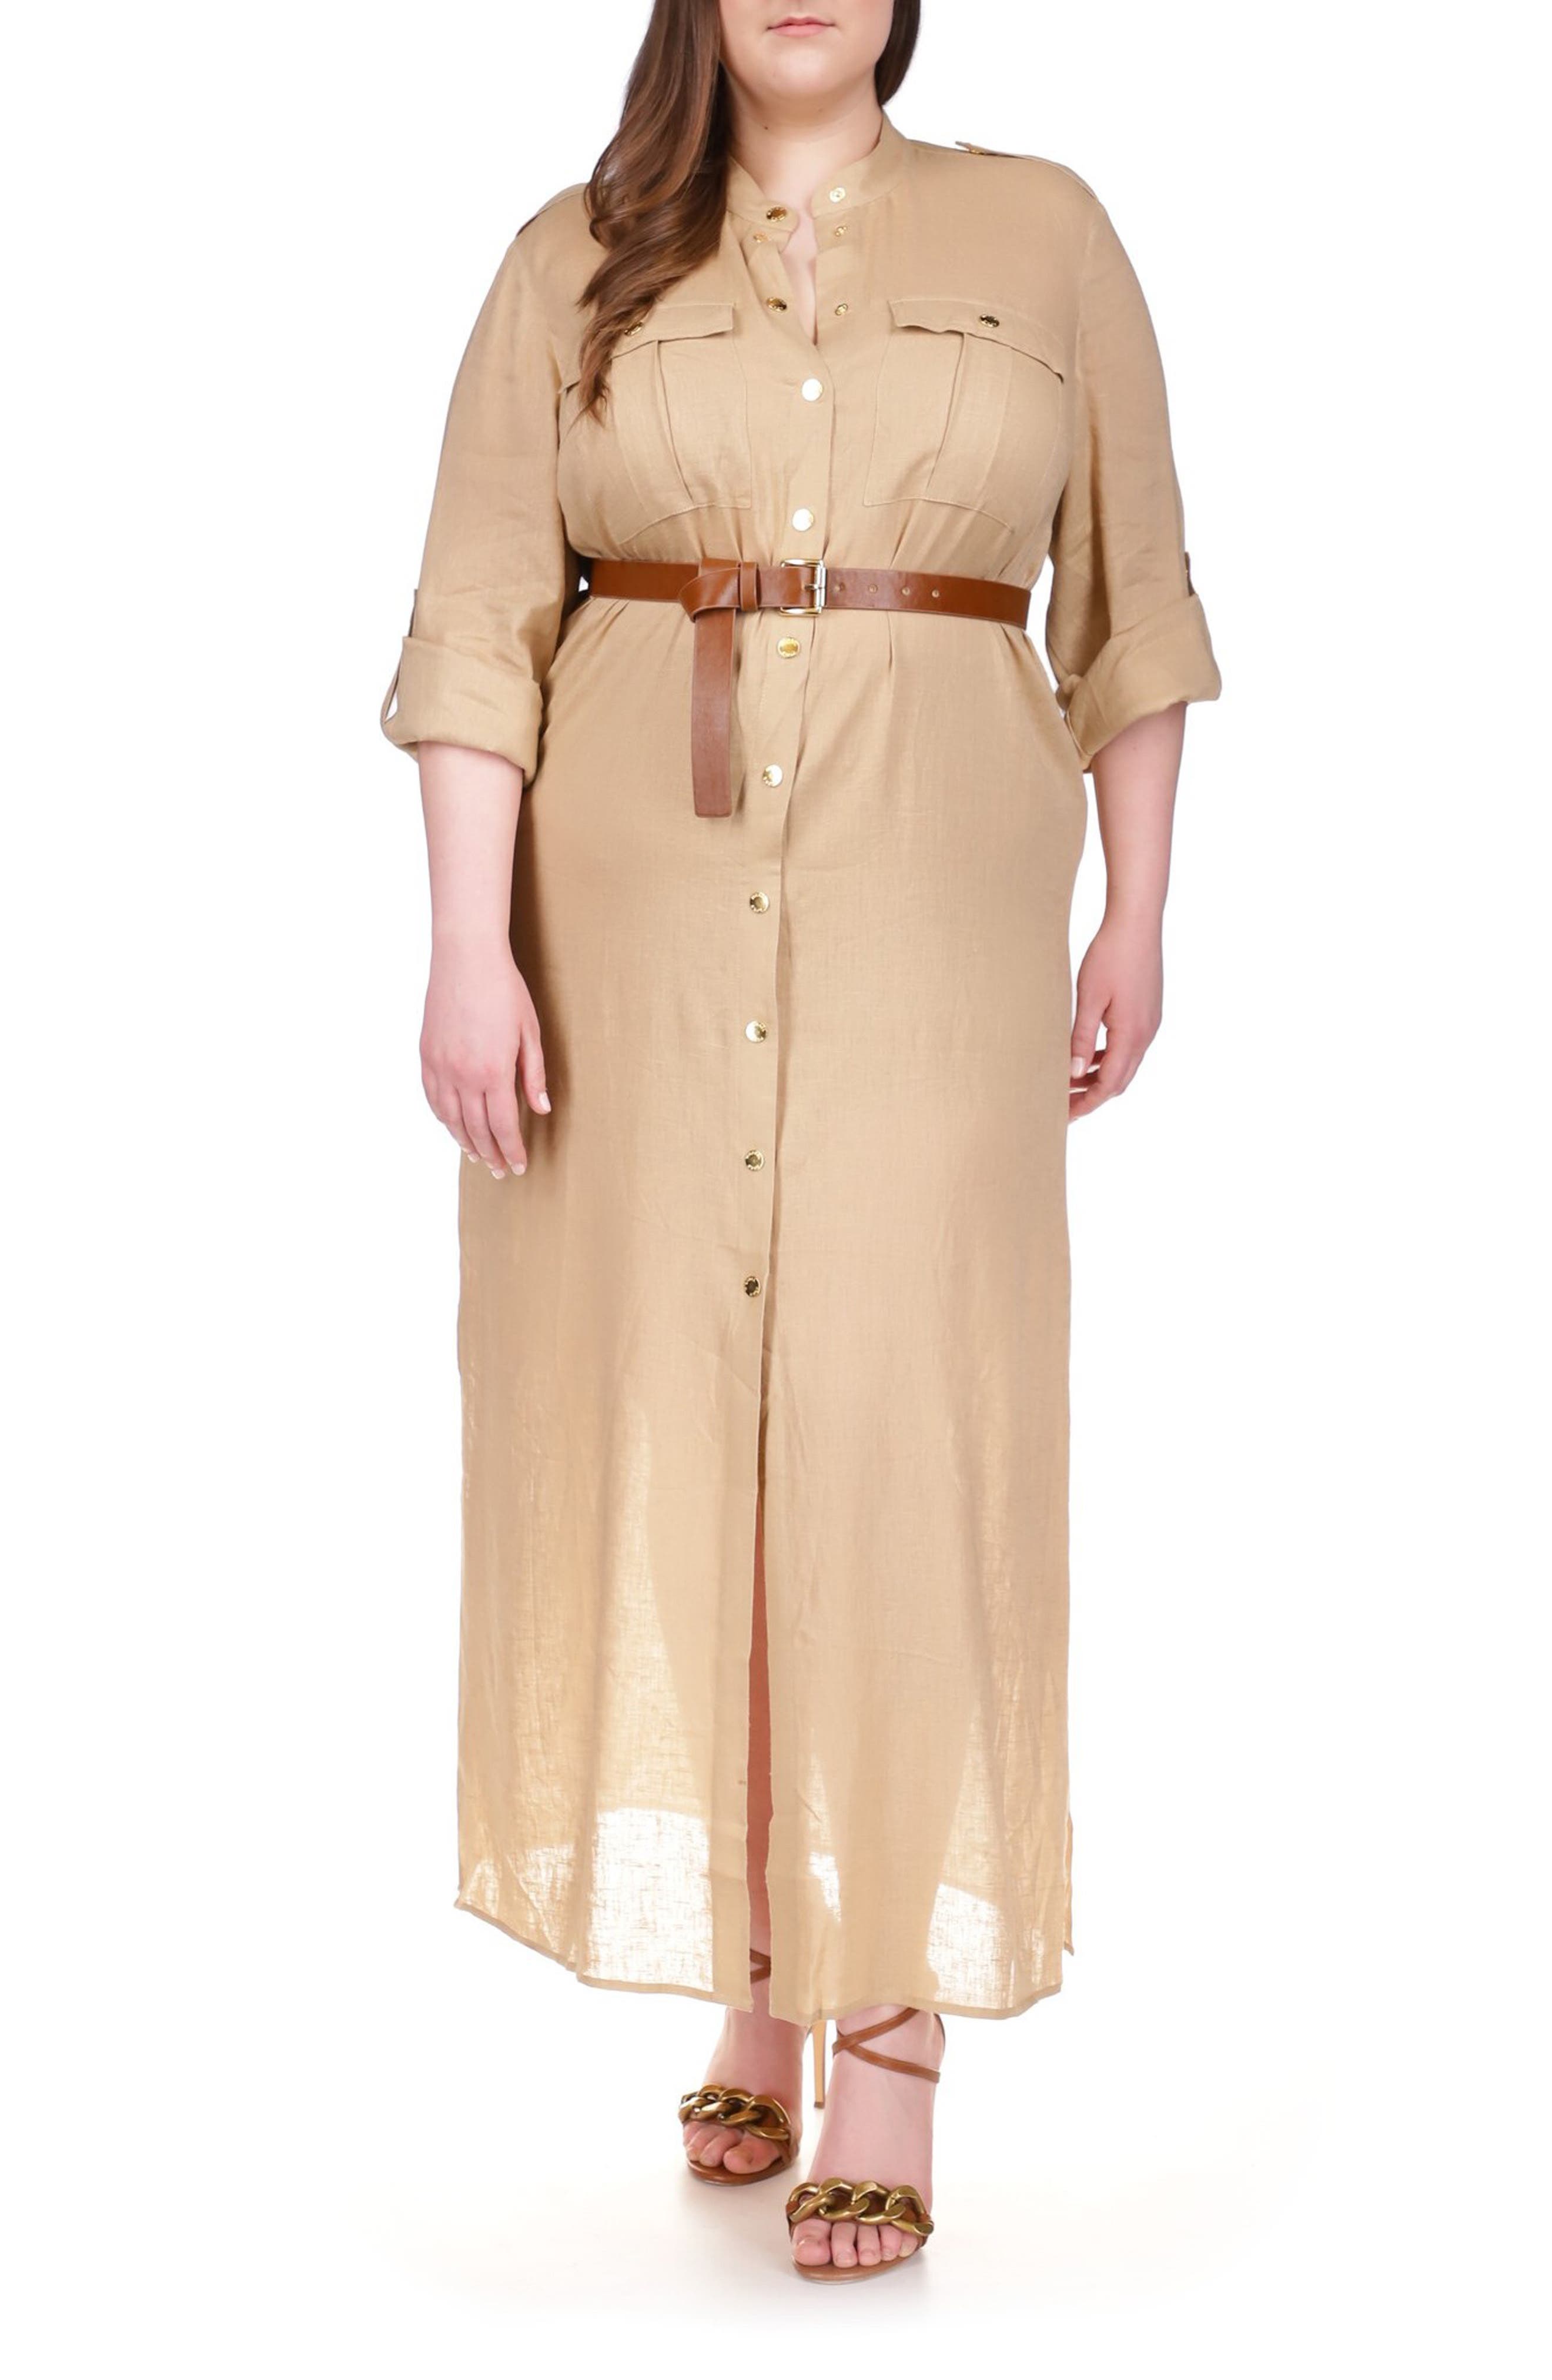 Michael Kors Casual Dresses for Women | Nordstrom